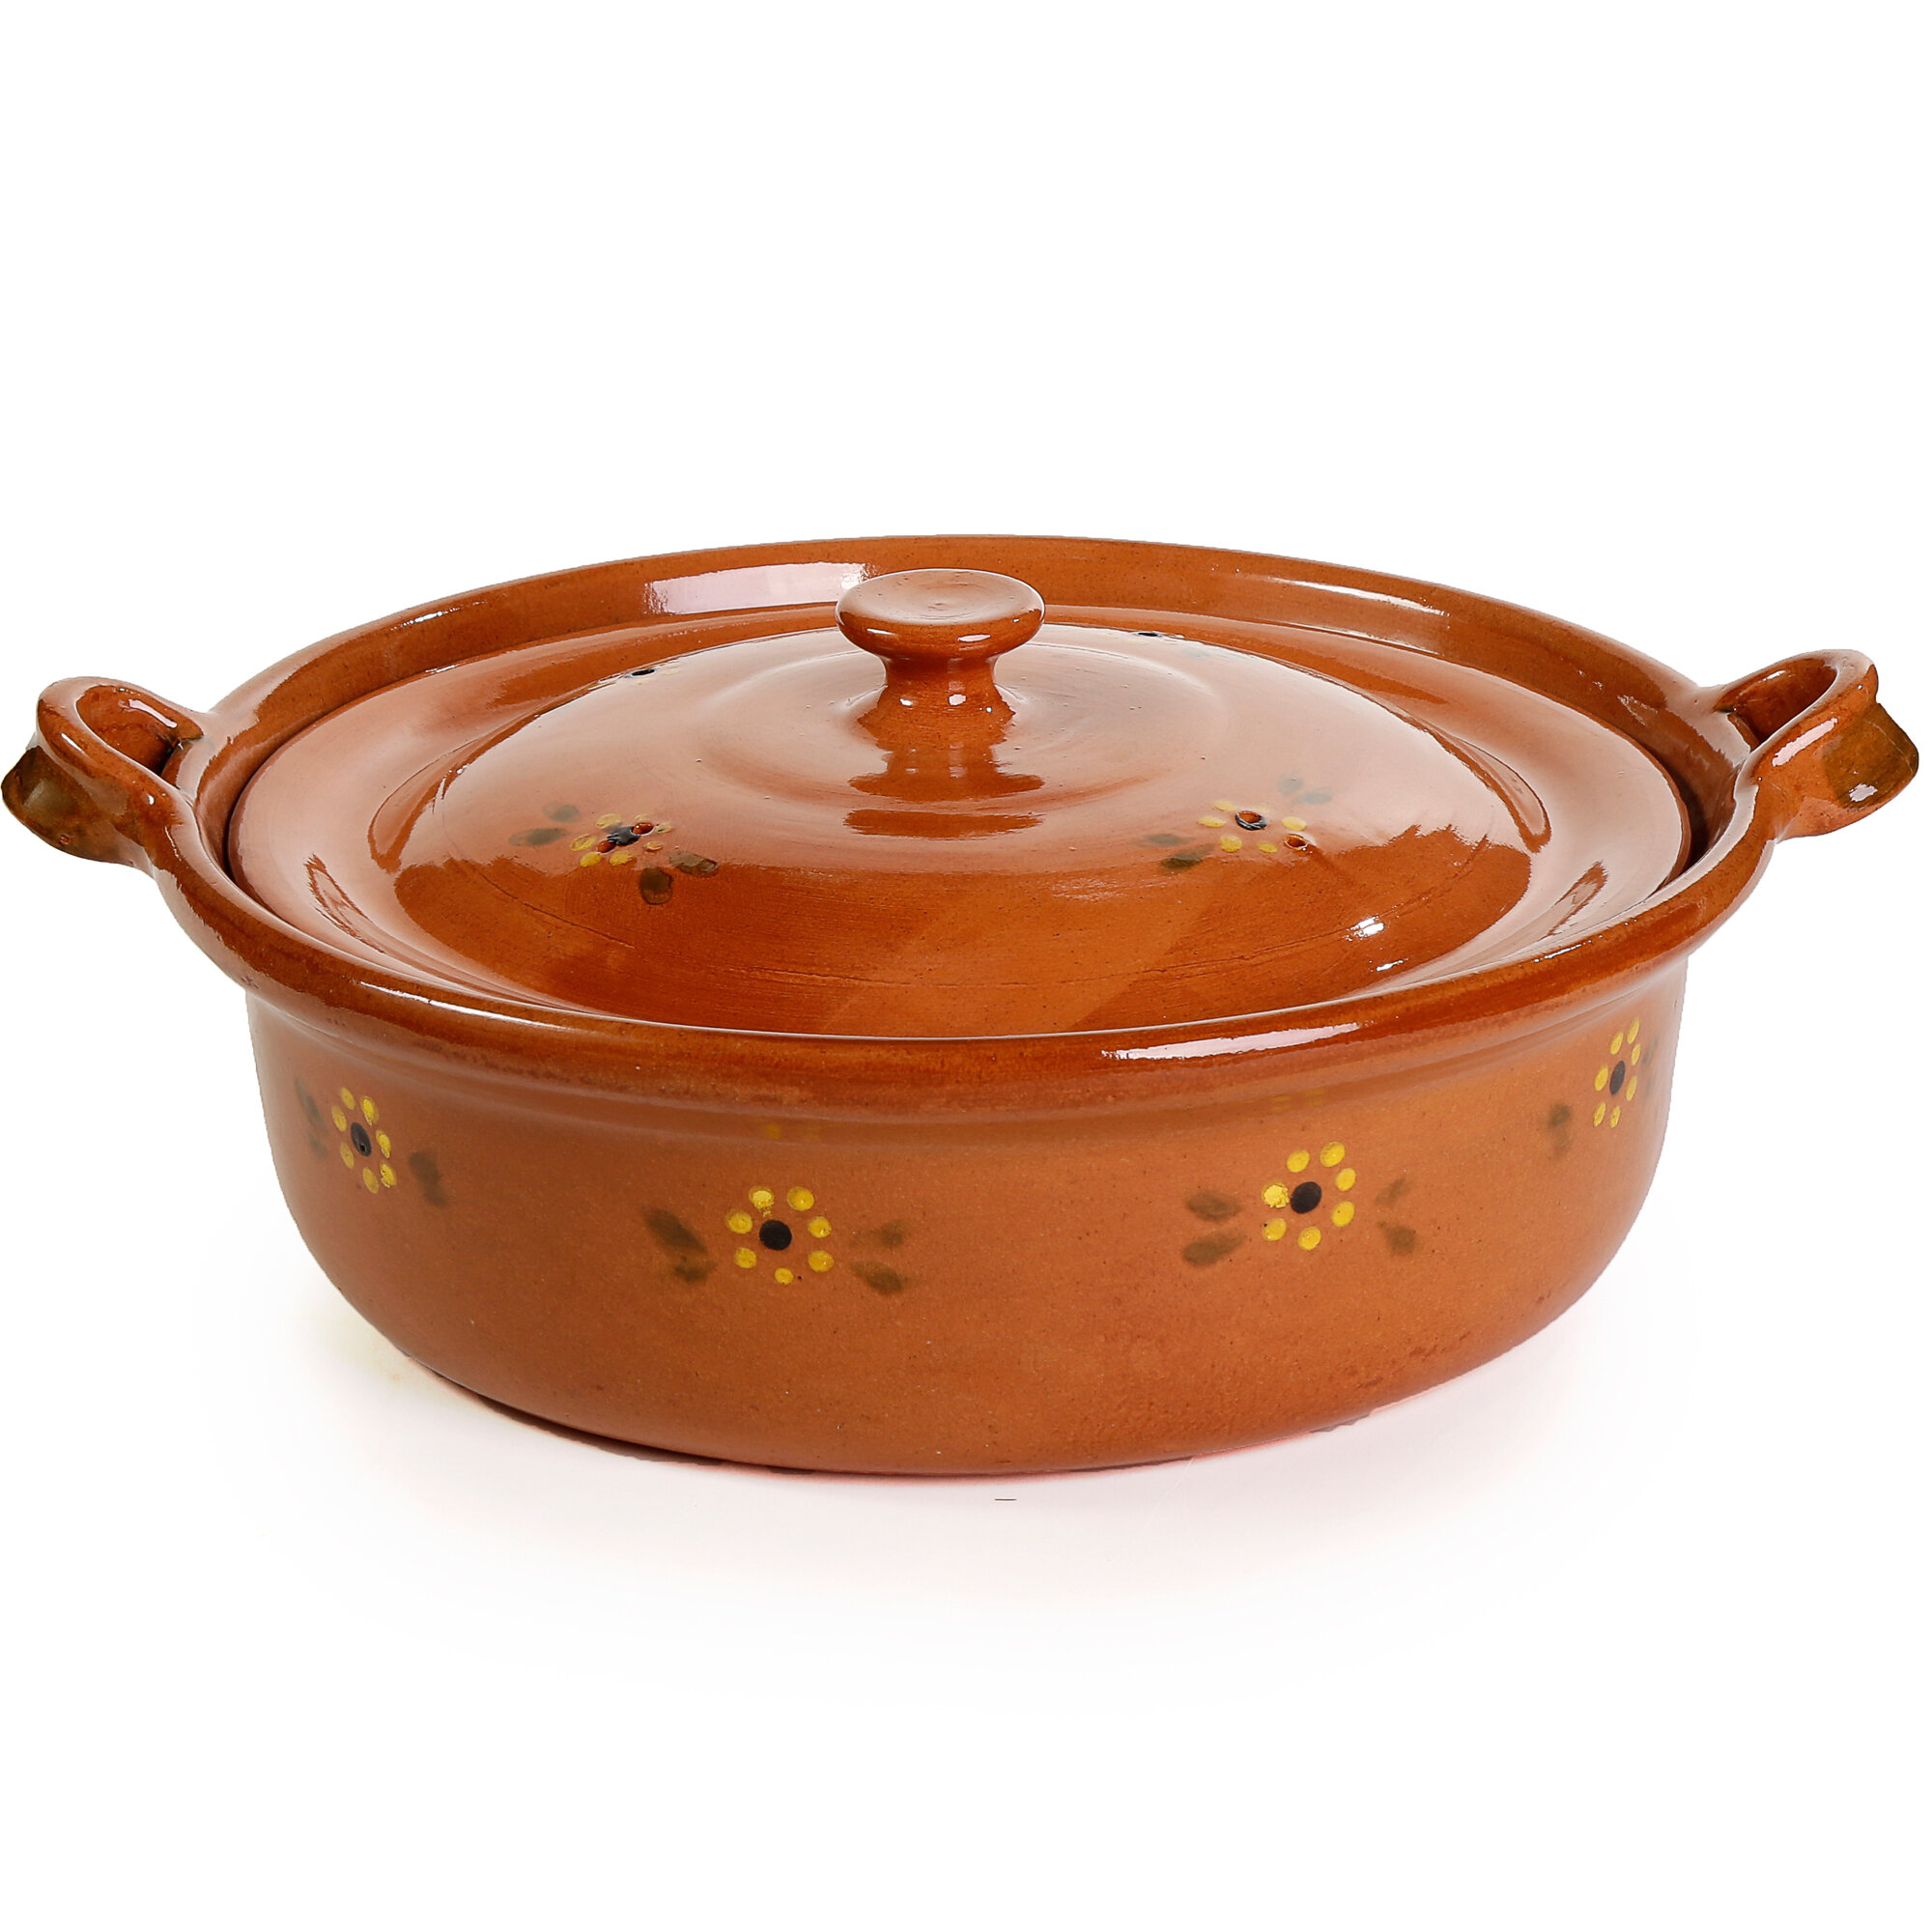 Ancient Cookware 20 qt. Terracotta Round Braiser with Lid   Wayfair